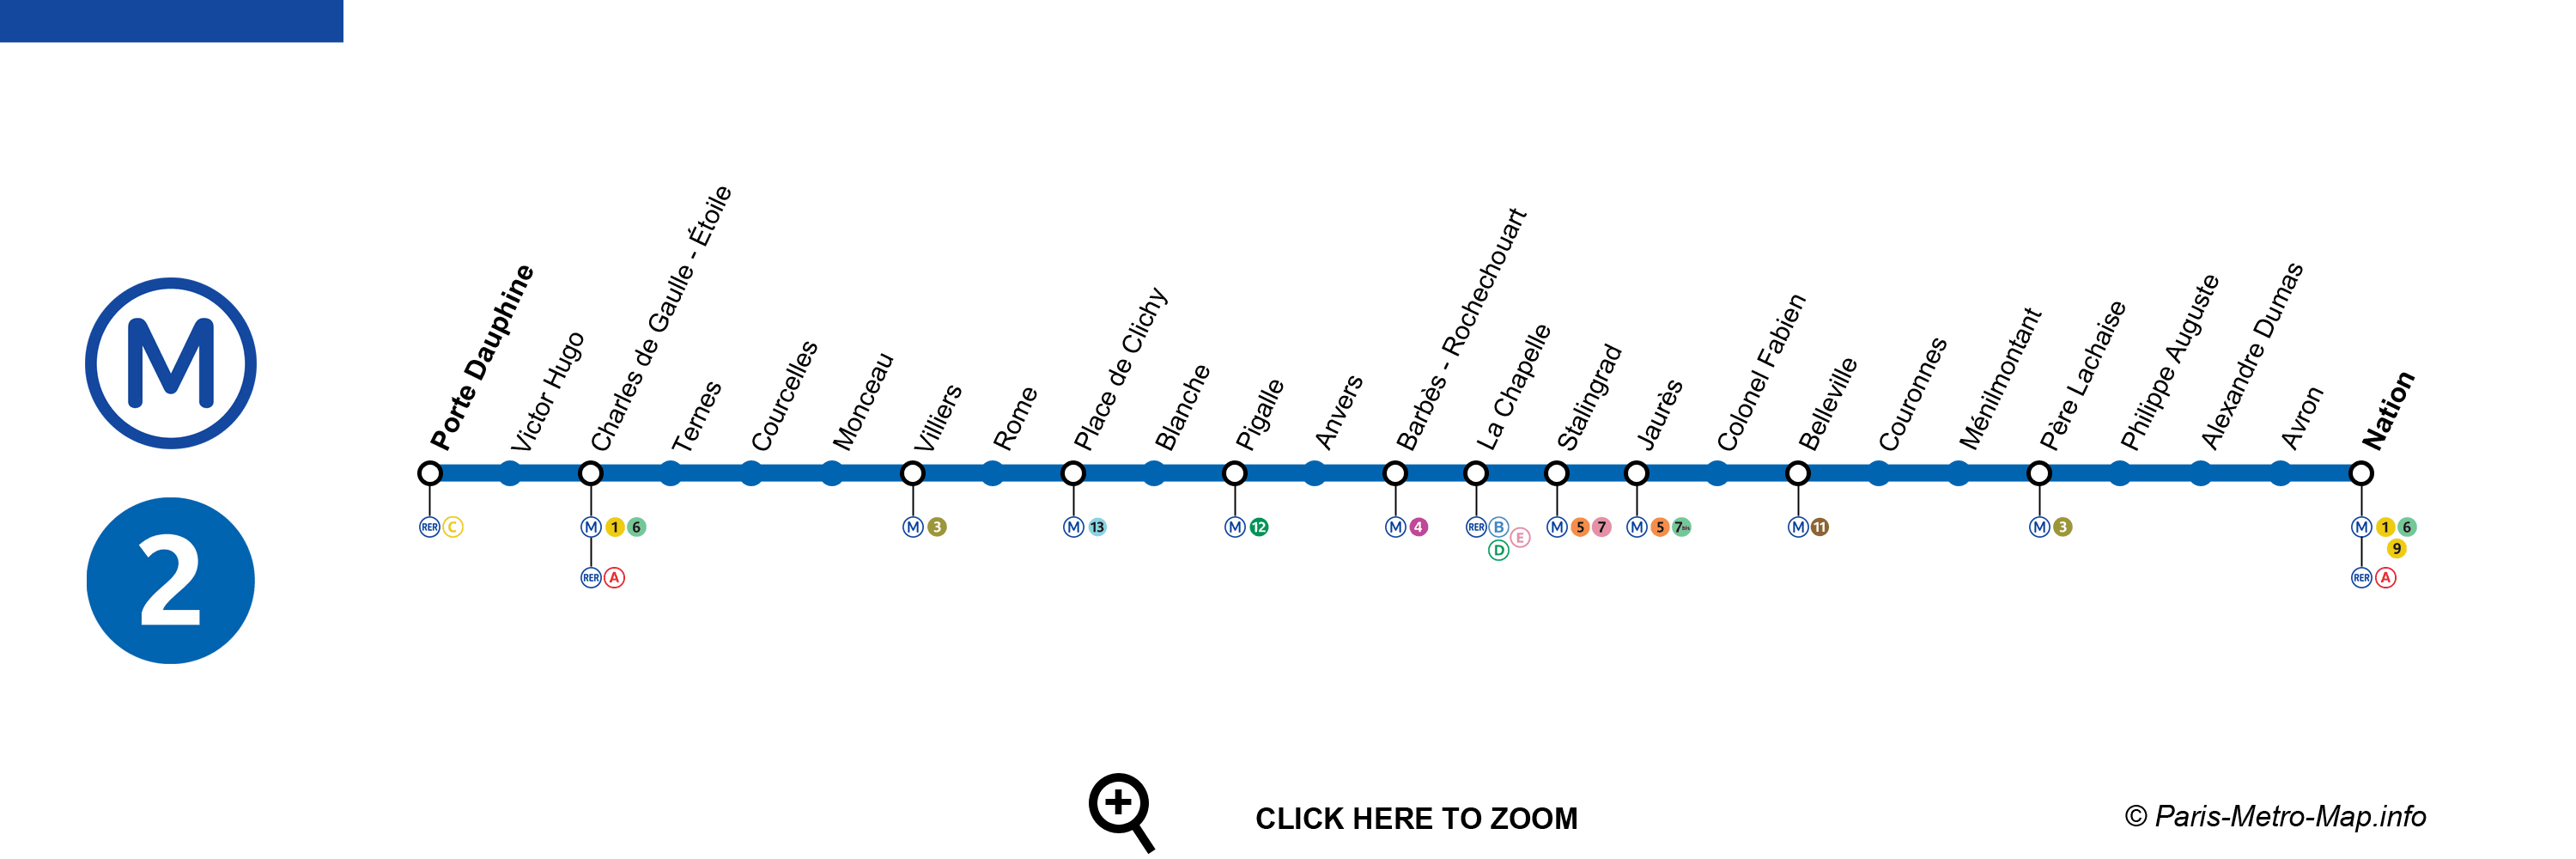 Métro 2 Paris - Plan, horaires, stations, tarif, état du trafic de la